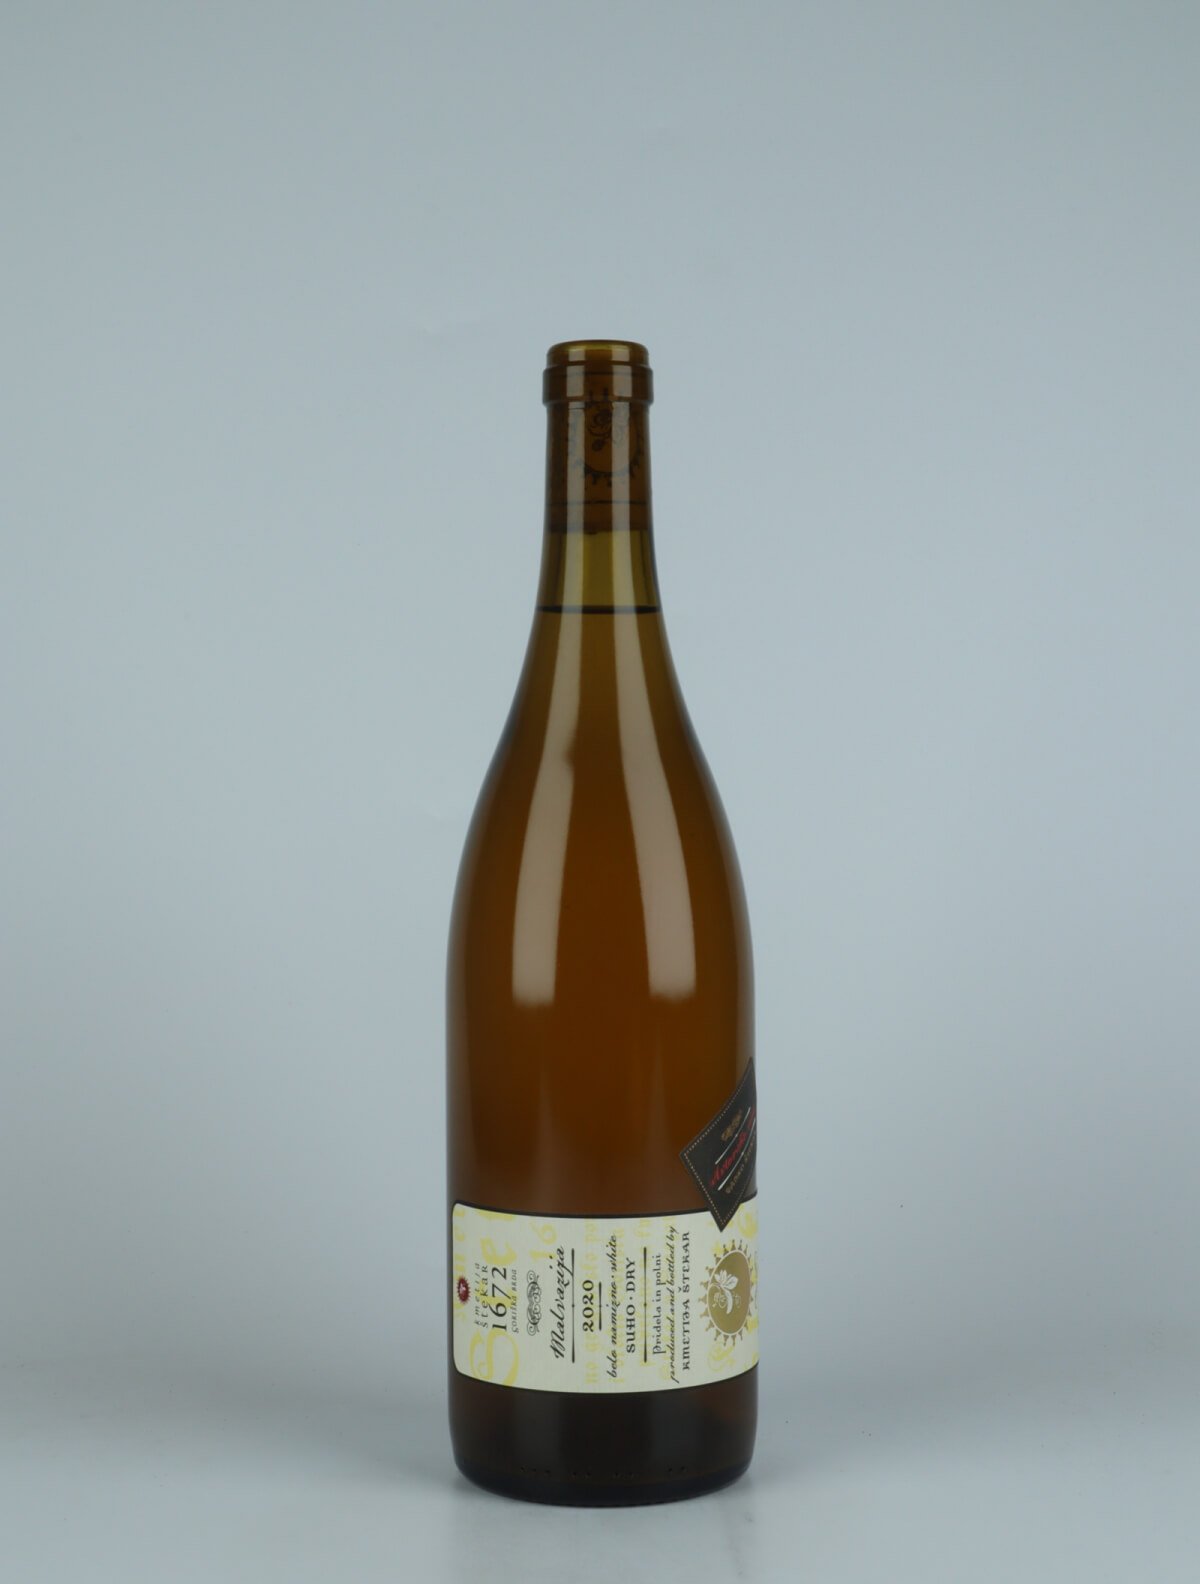 A bottle 2020 Malvazija Orange wine from , Brda in Slovenia